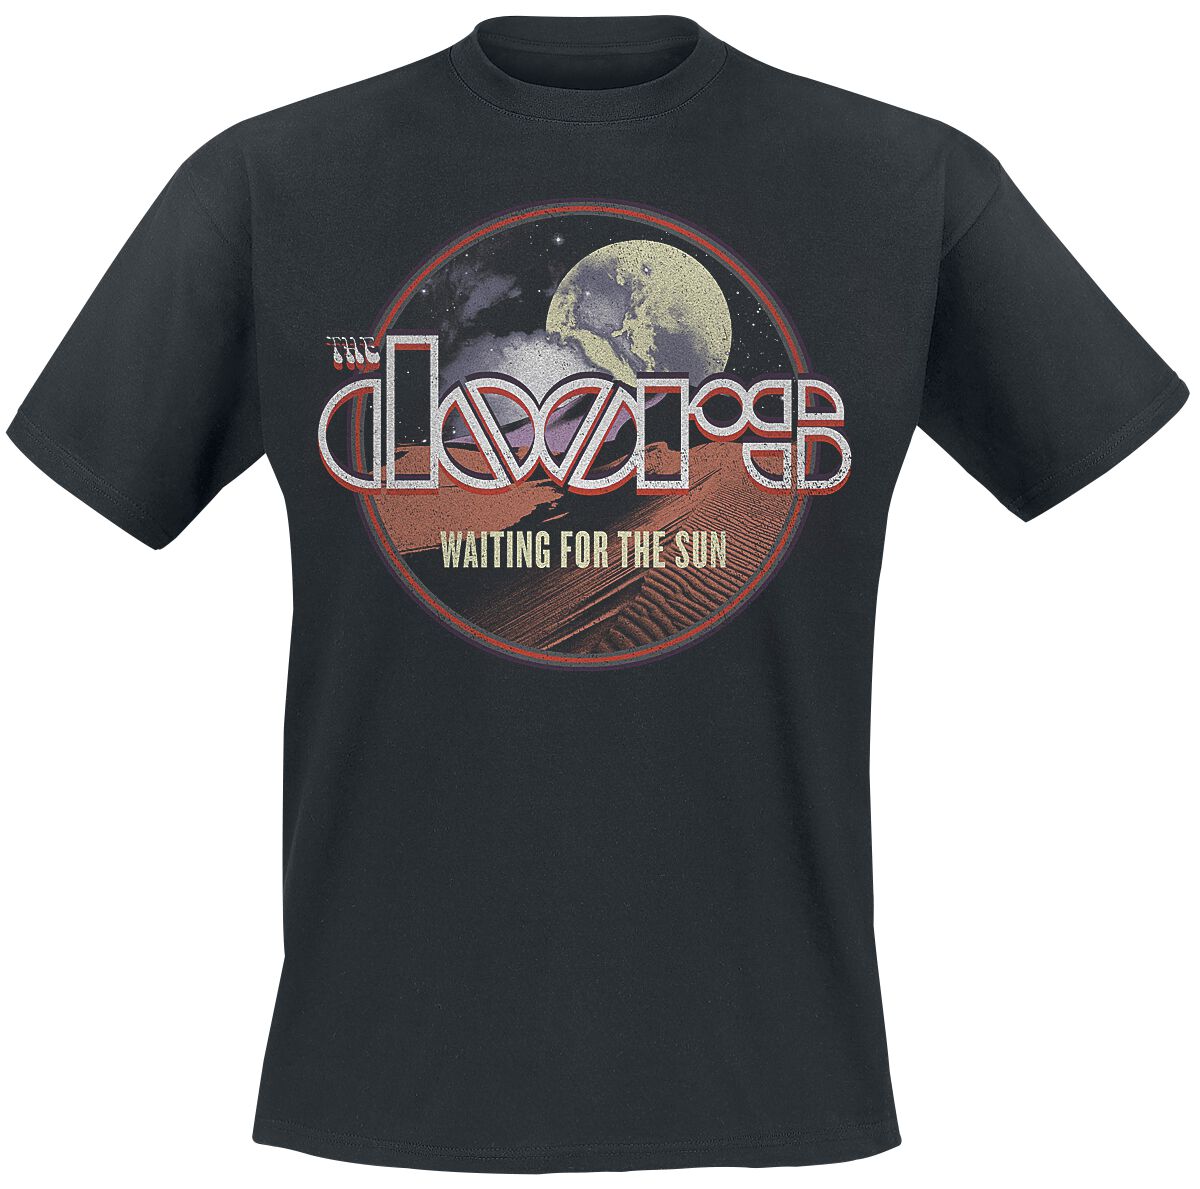 The Doors T-Shirt - Waiting For The Sun - S bis XXL - für Männer - Größe XL - schwarz  - Lizenziertes Merchandise!